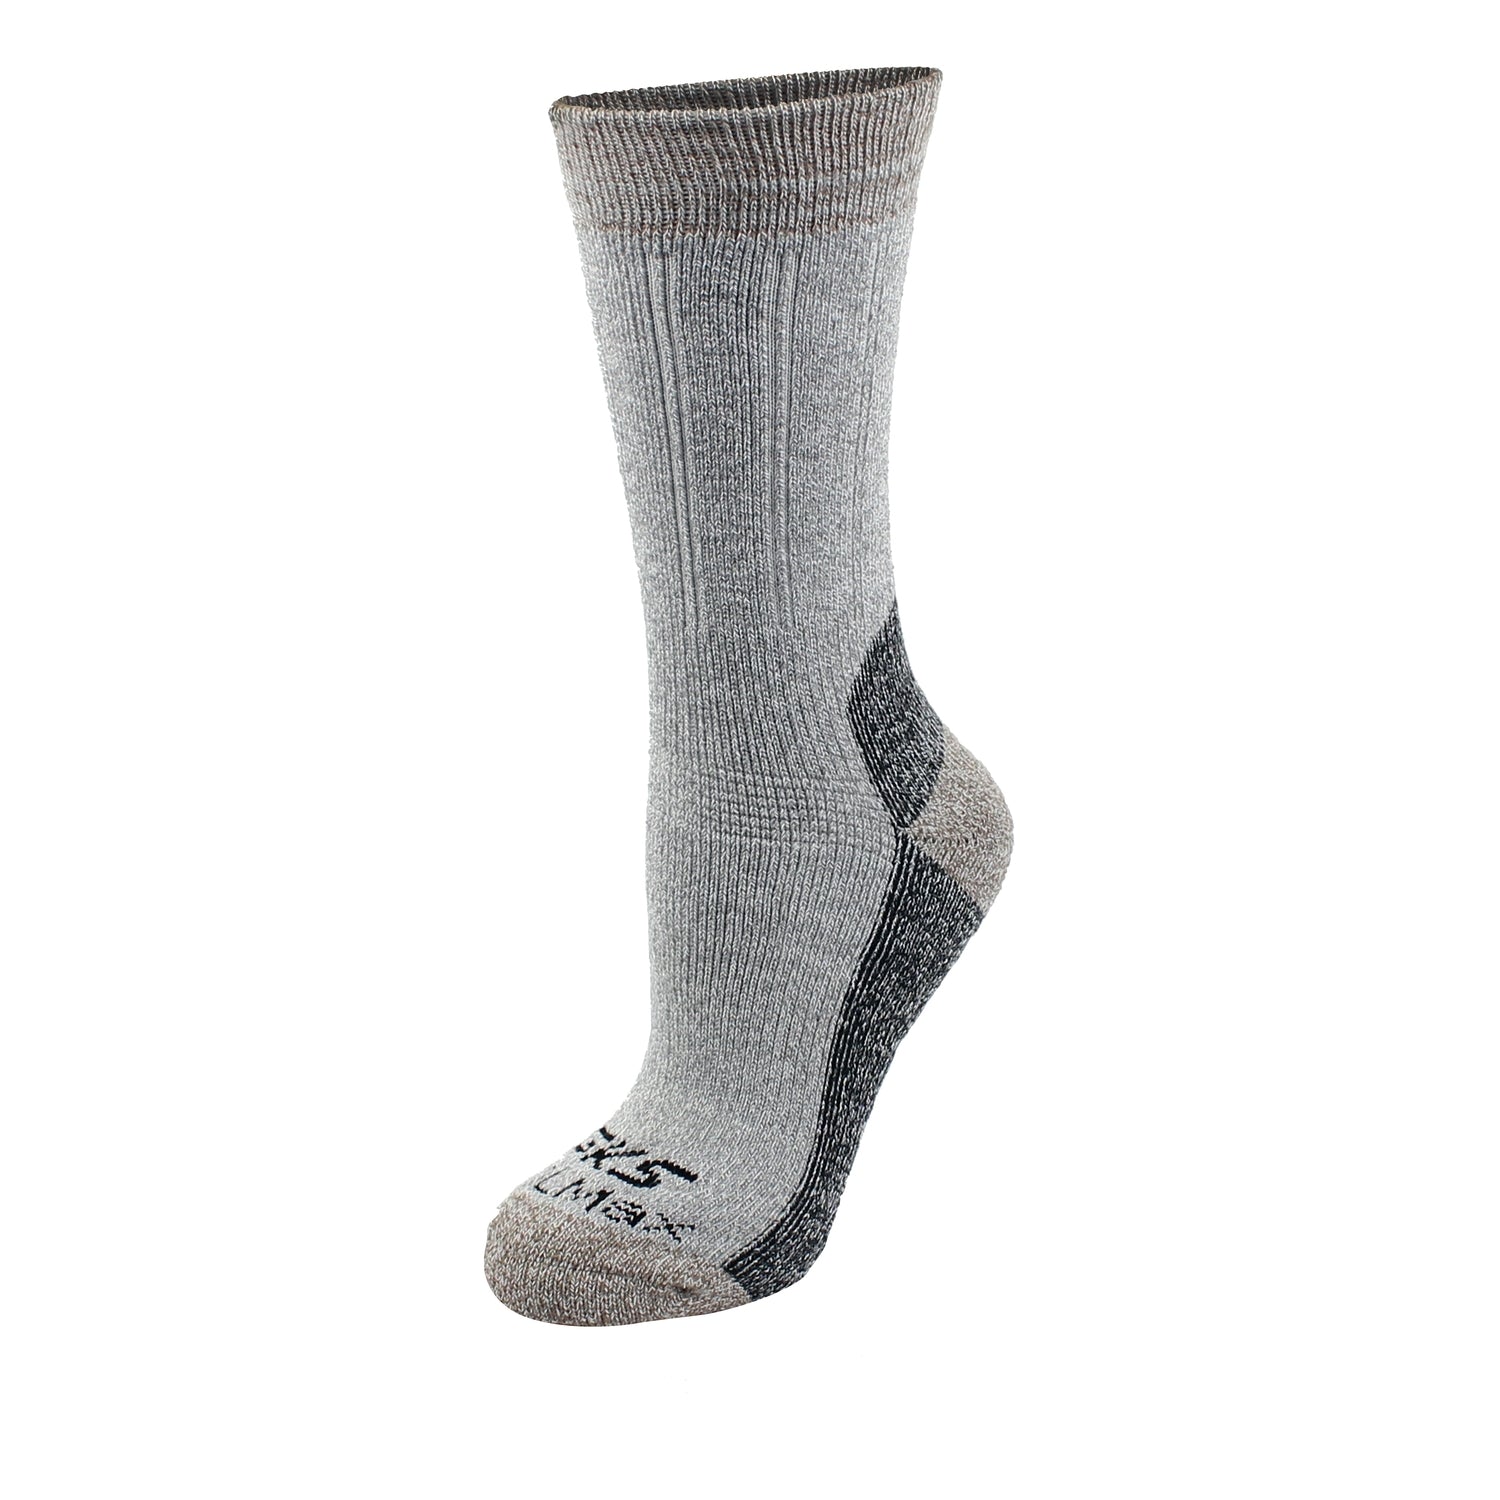 GKS Men's Socks -85% Coolmax/12% Nylon/3% Spand (84-375) - KBM Outdoors